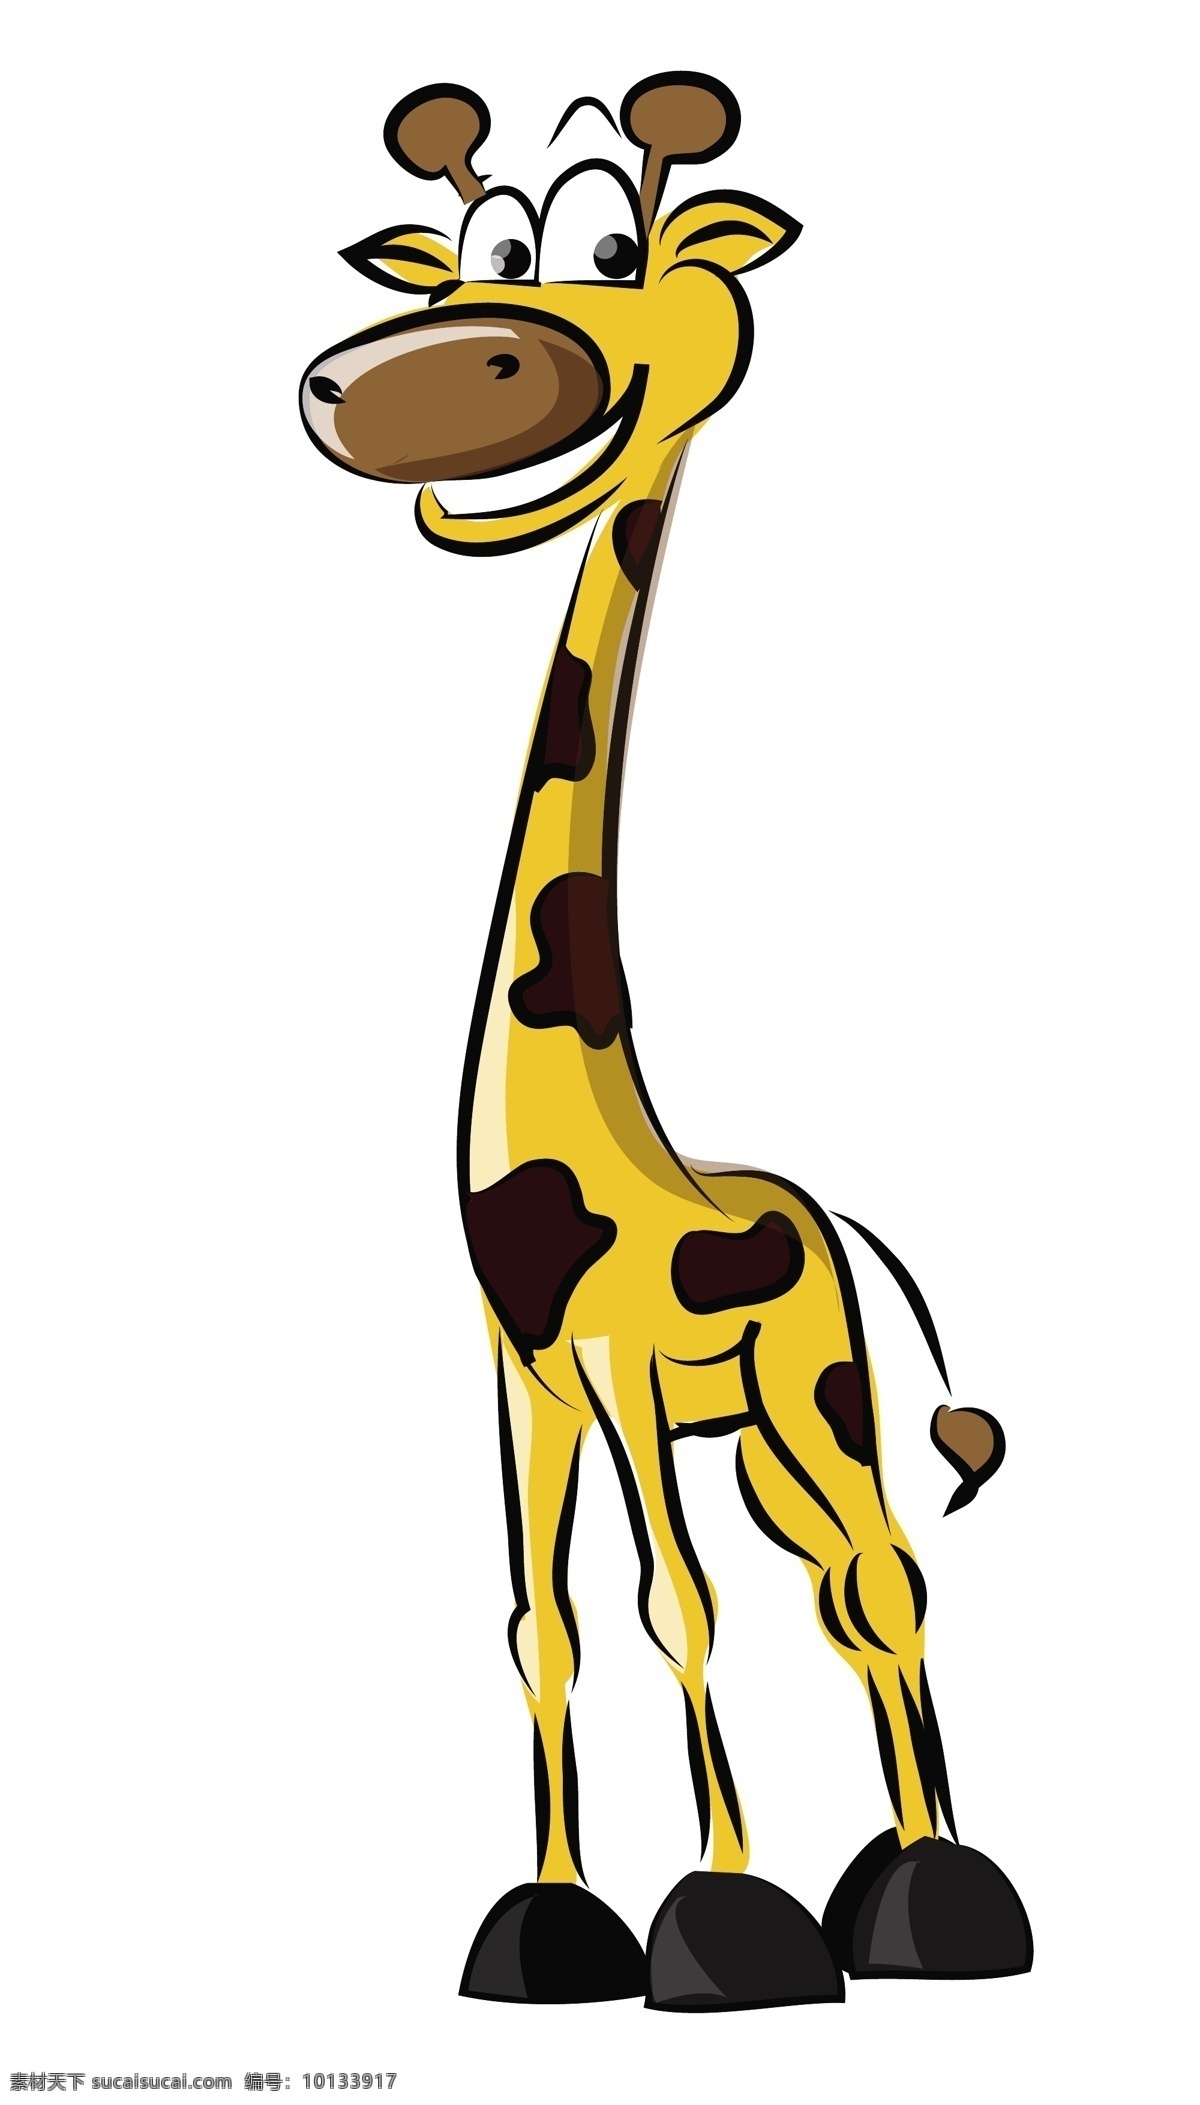 矢量 野生动物 长颈鹿 动物 插画 卡通动物漫画 卡通形象 矢量人物 矢量素材 矢量动物 卡通